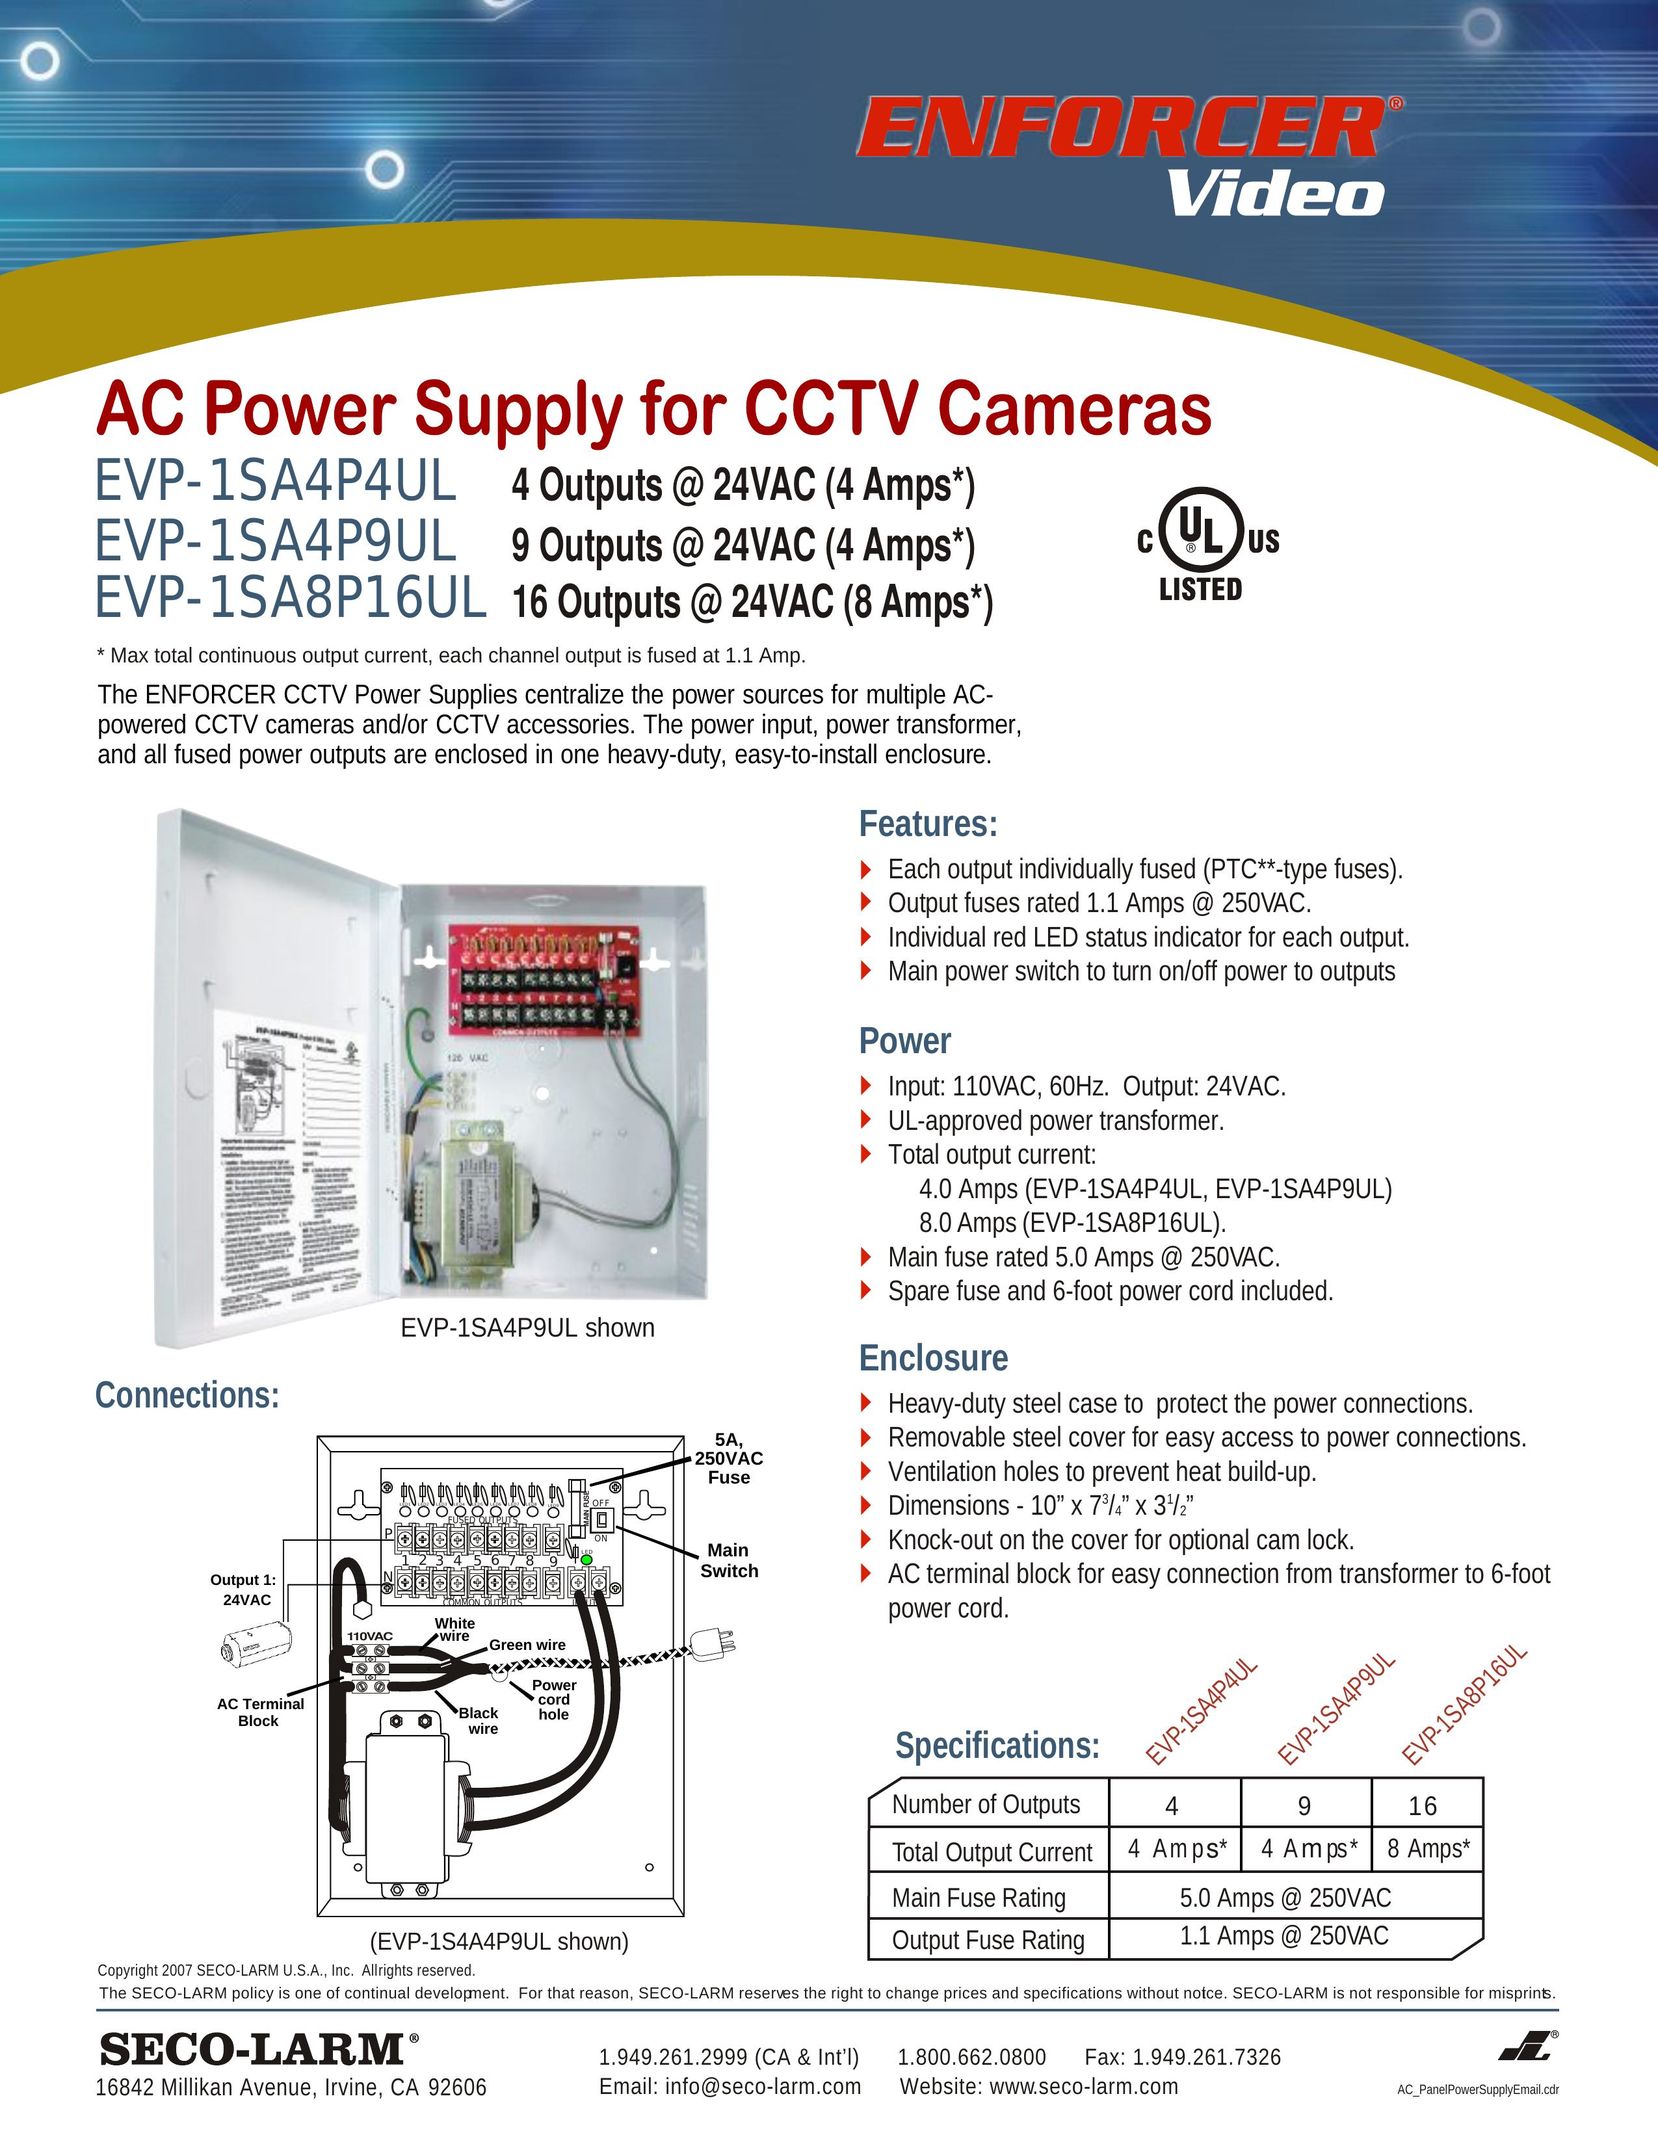 SECO-LARM USA EVP-1SA4P4UL Power Supply User Manual